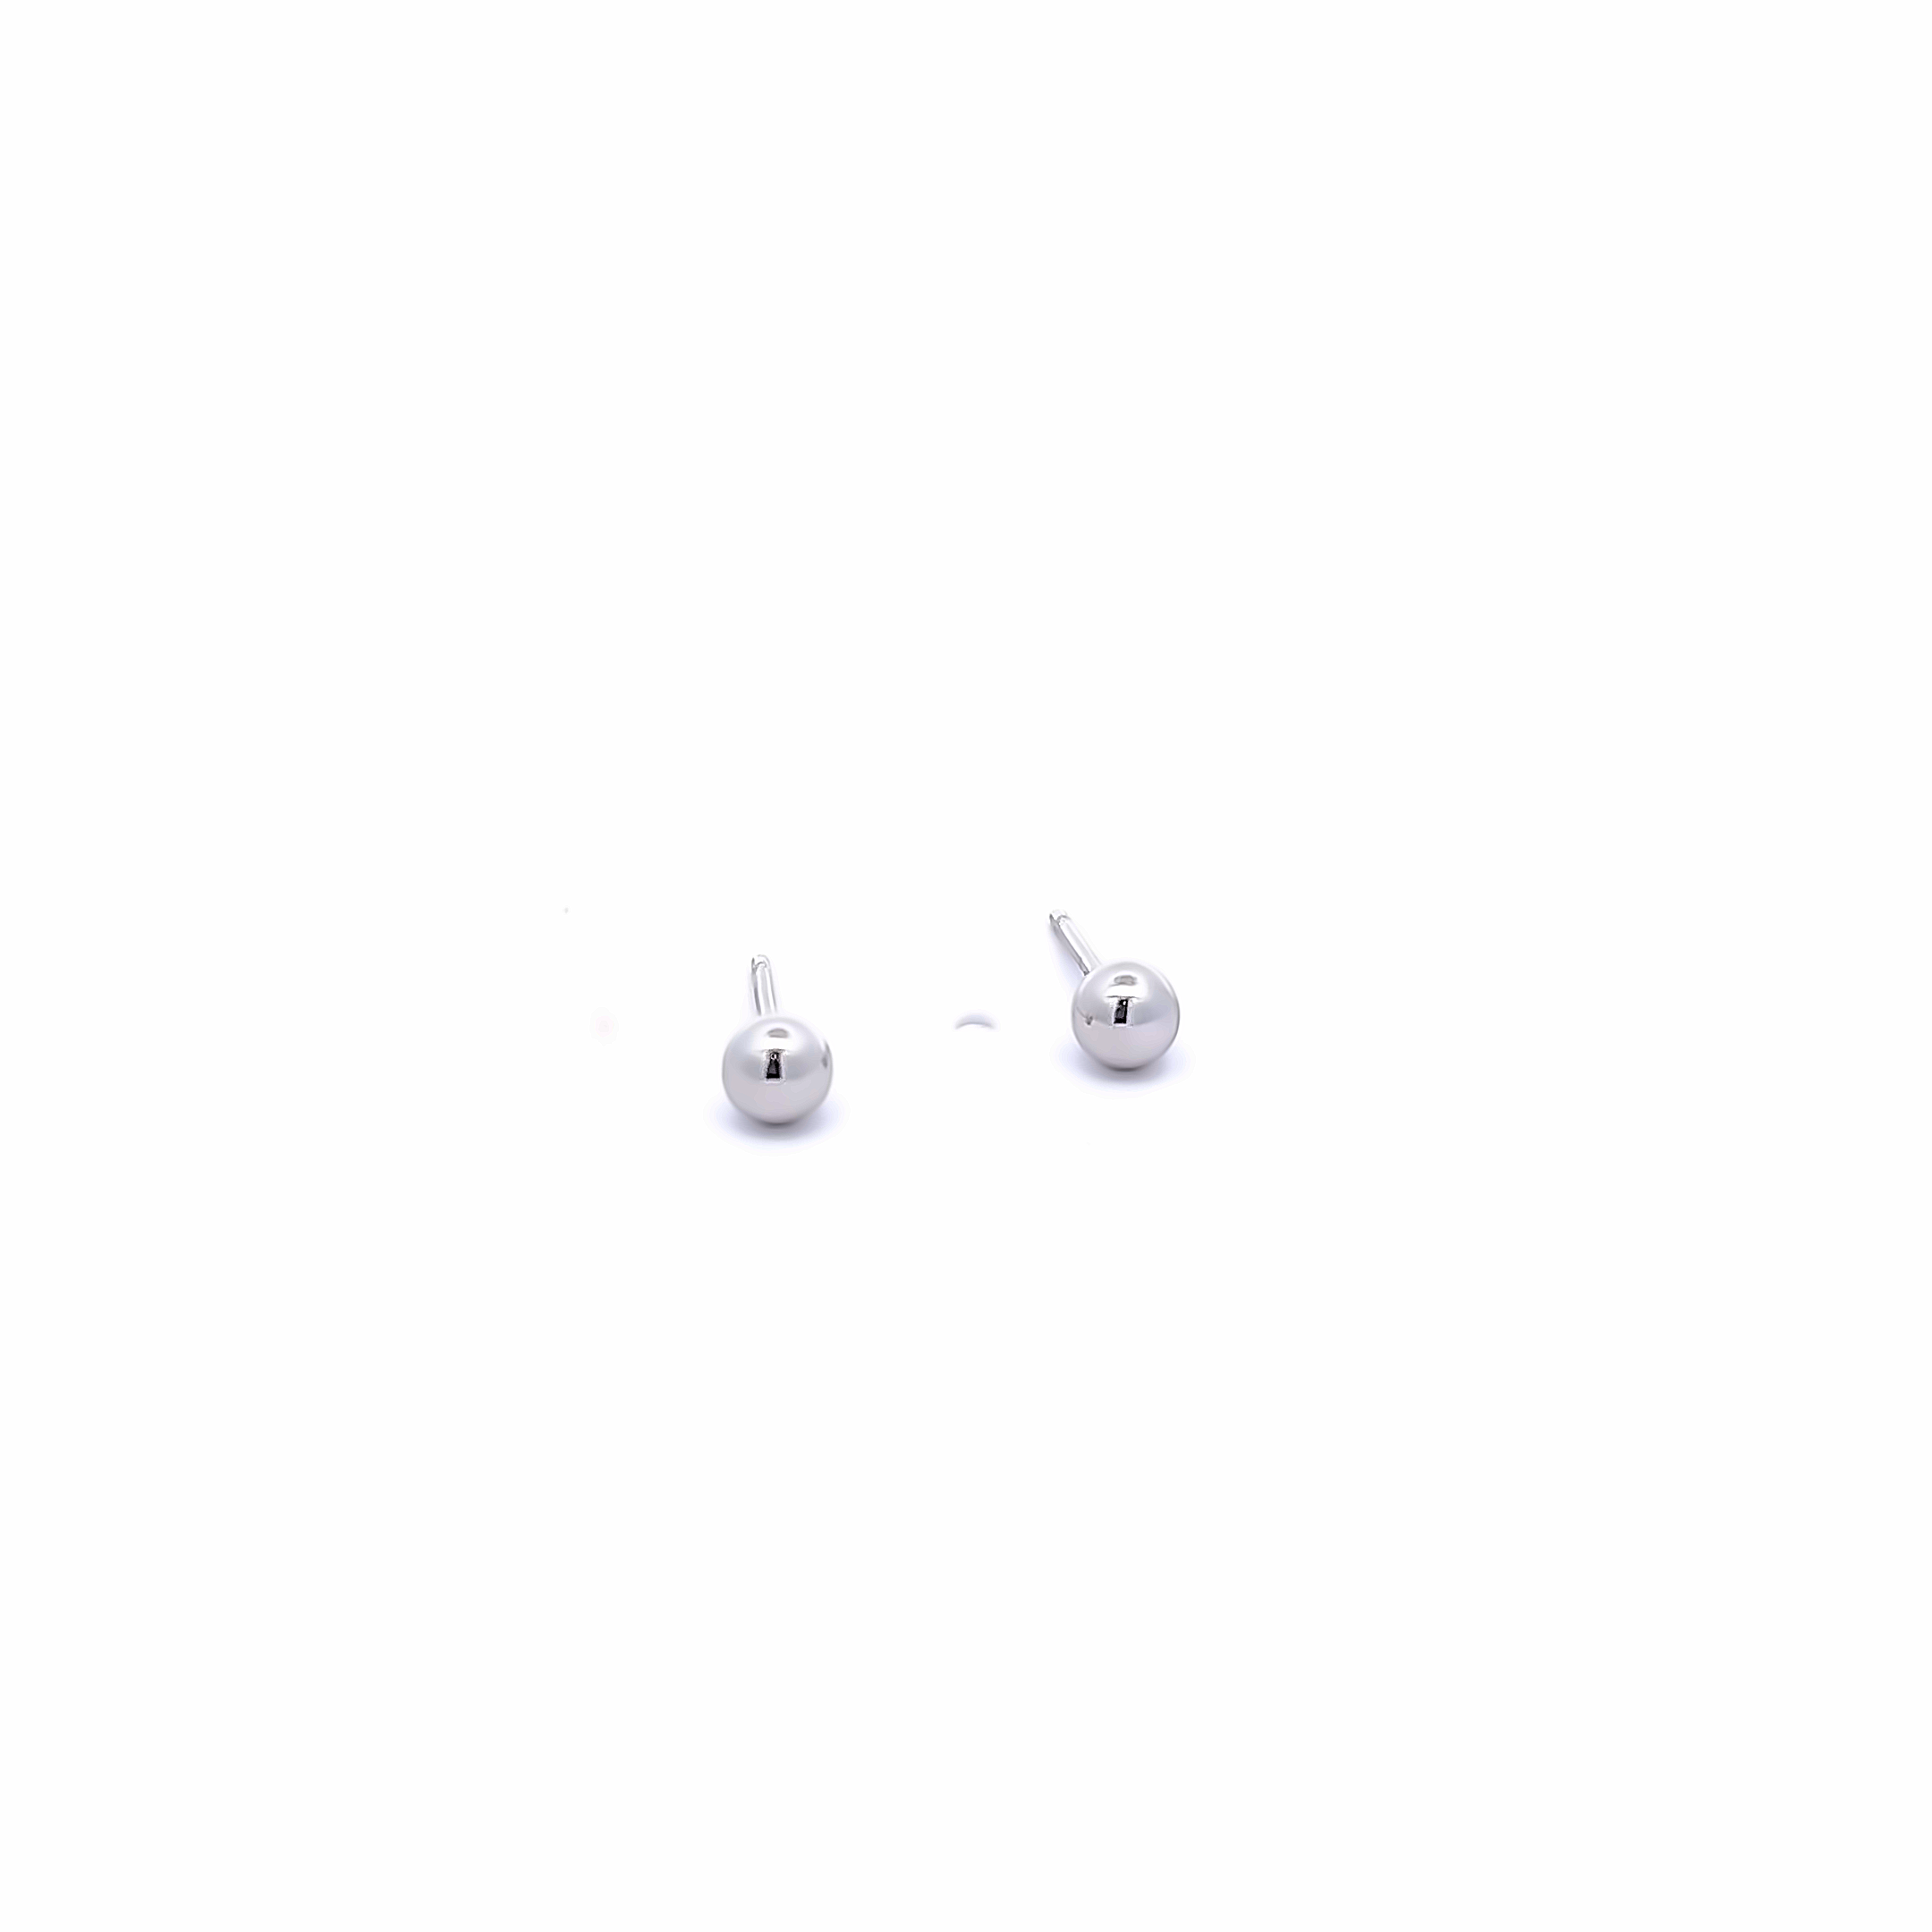 14 karat white gold 4mm ball stud earrings